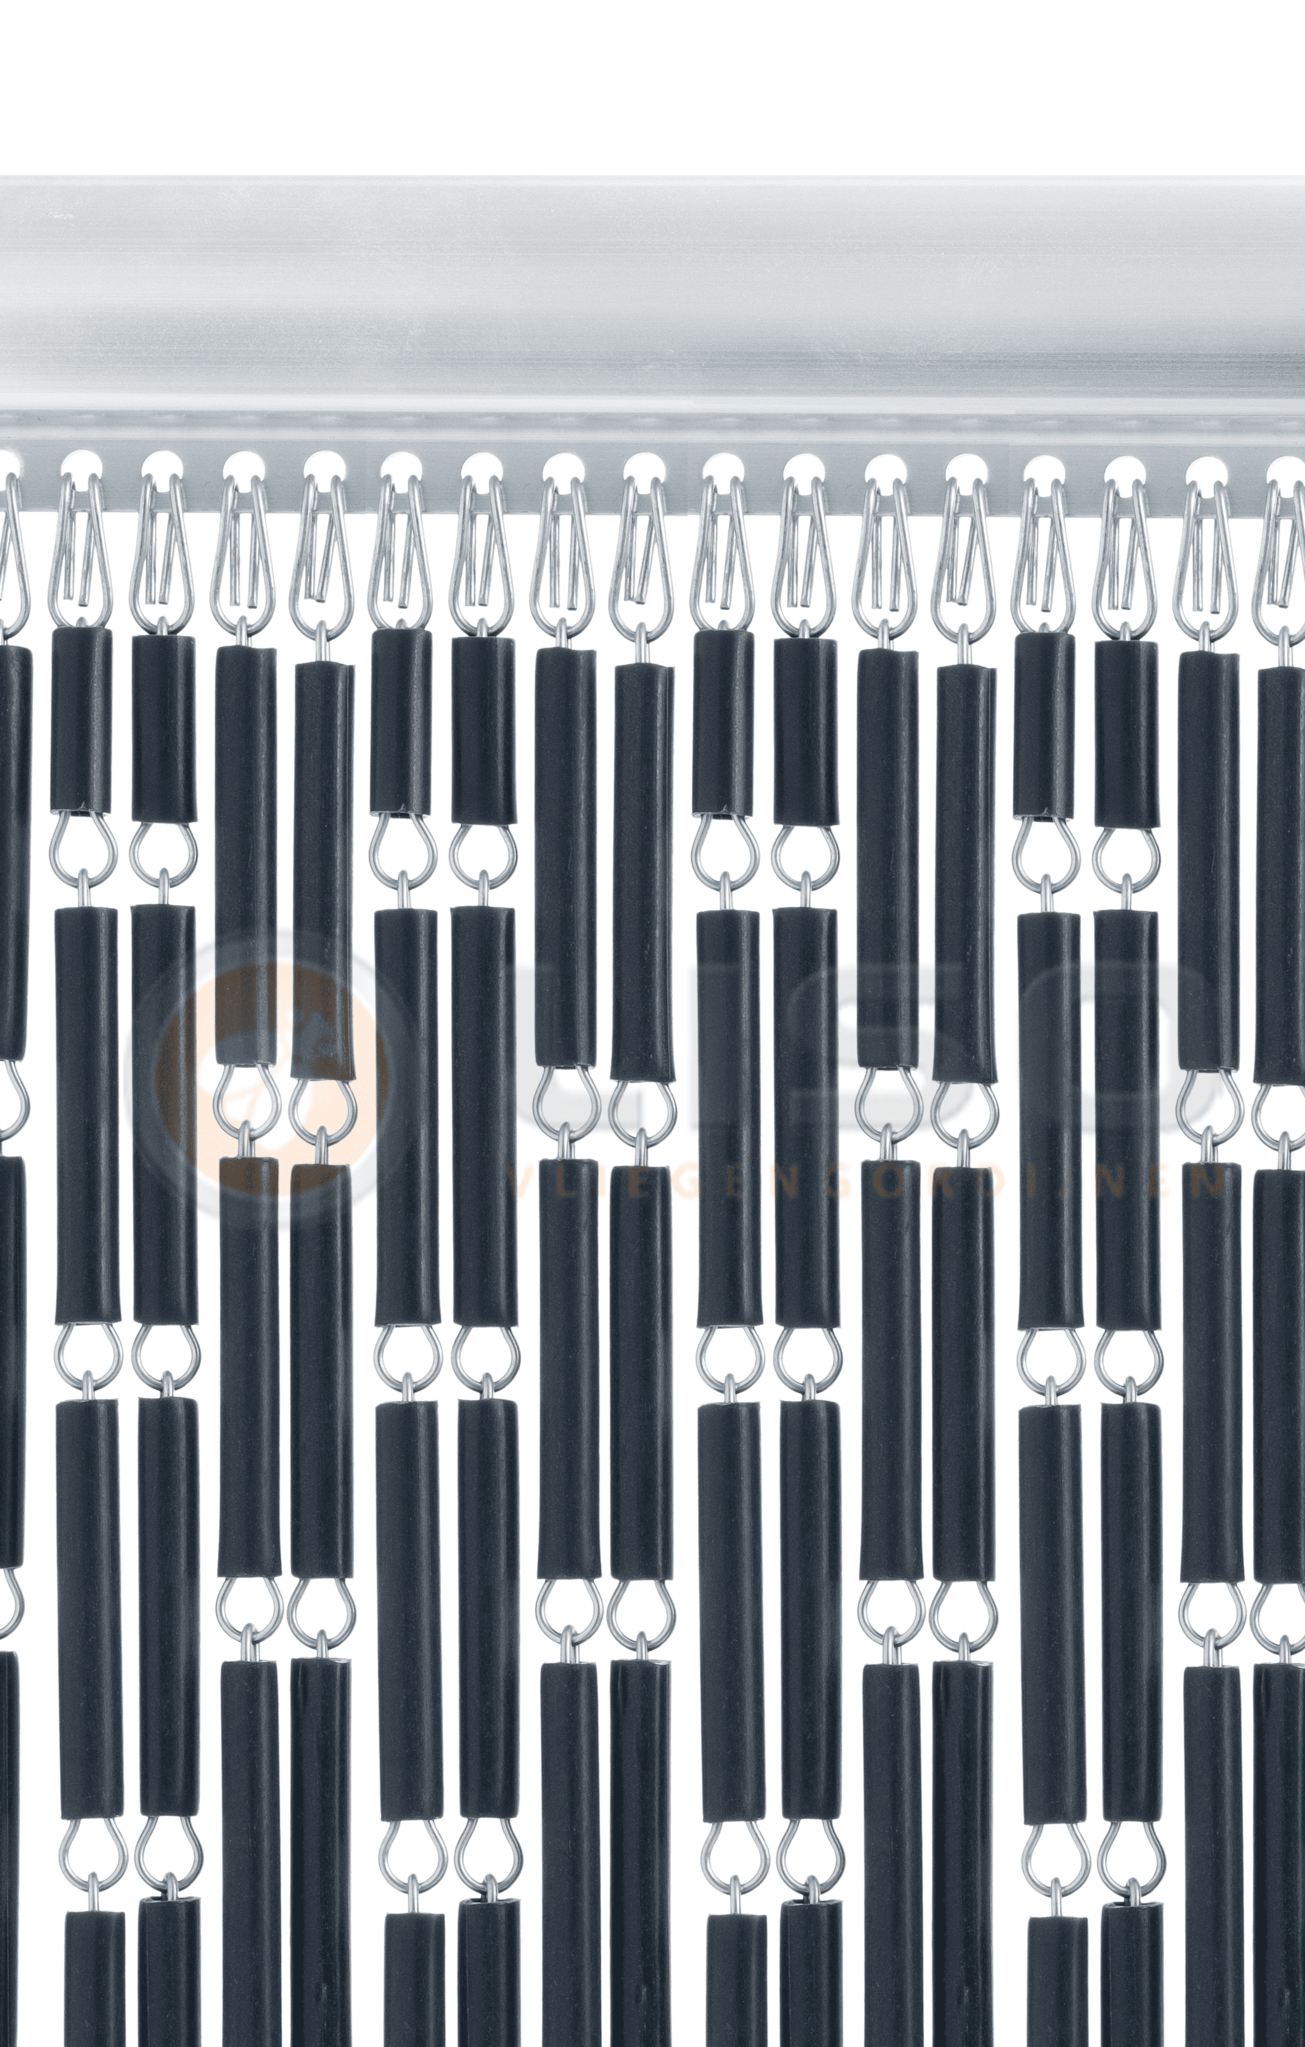 Verdraaiing namens Schaar Vliegengordijn kant en klaar Liso® 92 x 209cm antraciet grijs